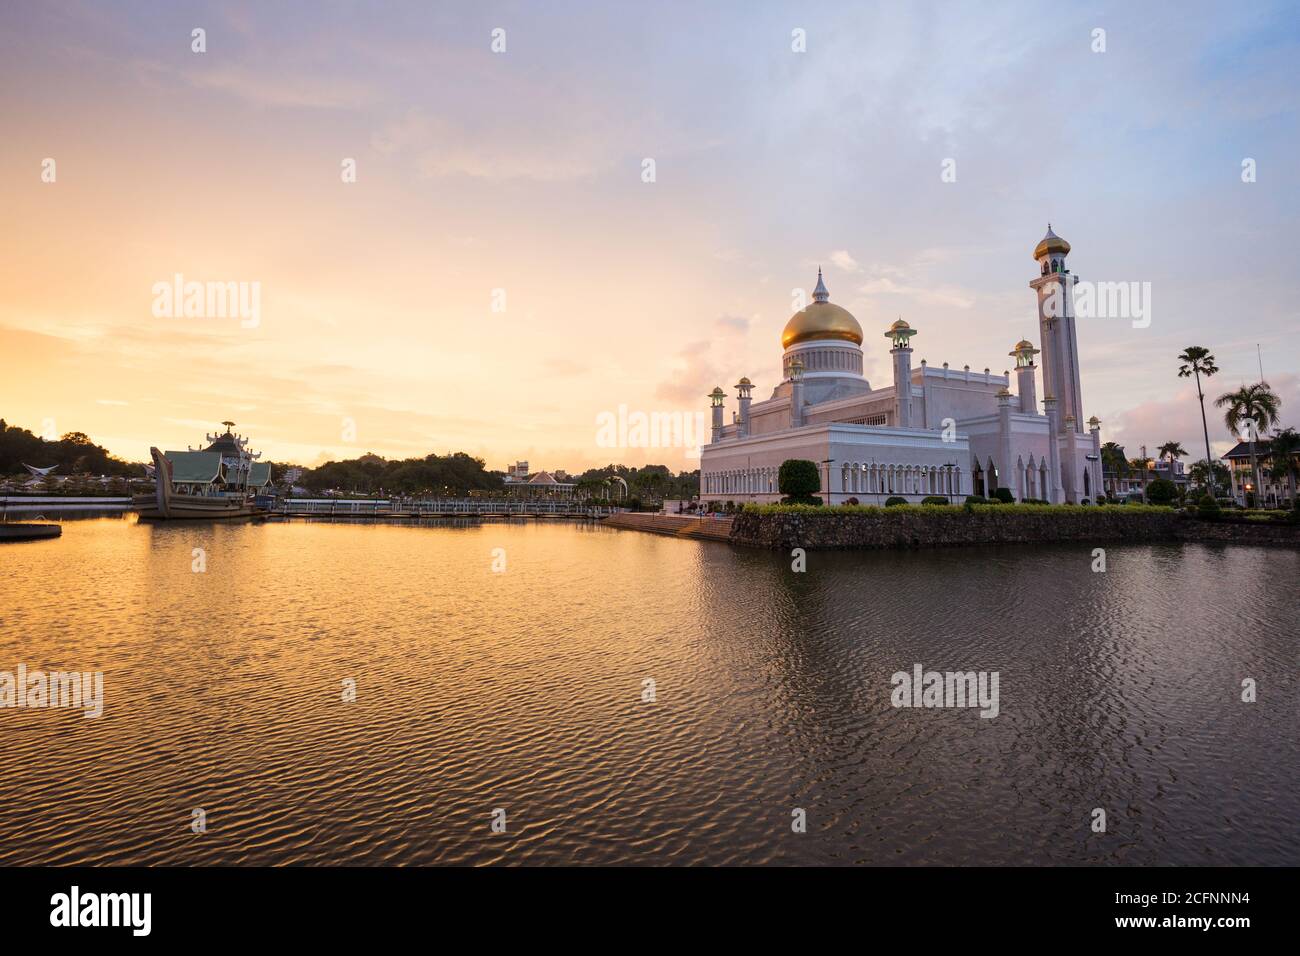 Bandar seri Begawan / Brunei - 16 gennaio 2019: Bella vista panoramica del sultano Omar Ali Saifuddin Moschea durante il tramonto con l'acqua riflessione in lago Foto Stock